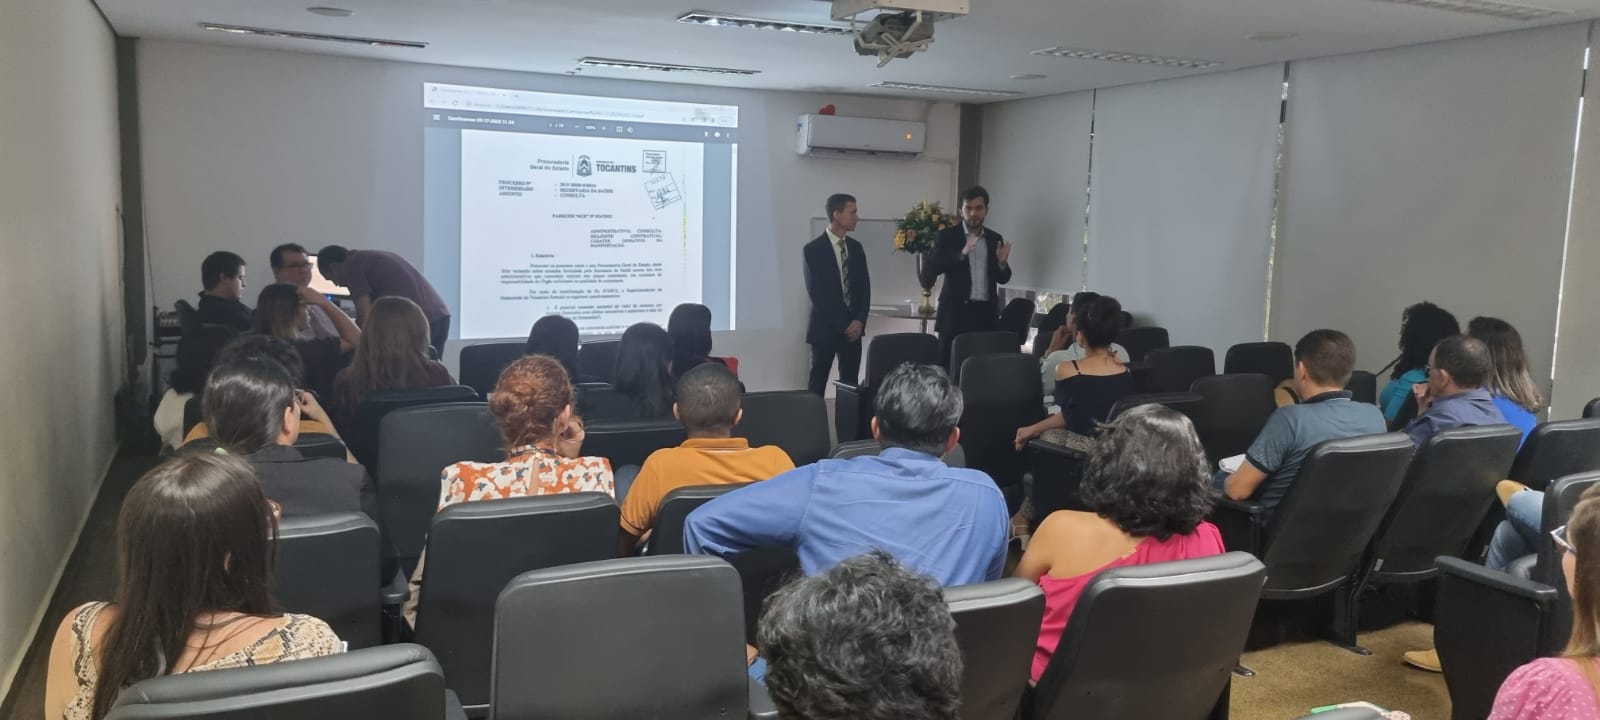 José Humberto Muniz Filho e Nivair Borges falam aos presentes durante a reunião/Foto: Gabriela Glória/Governo do Tocantins